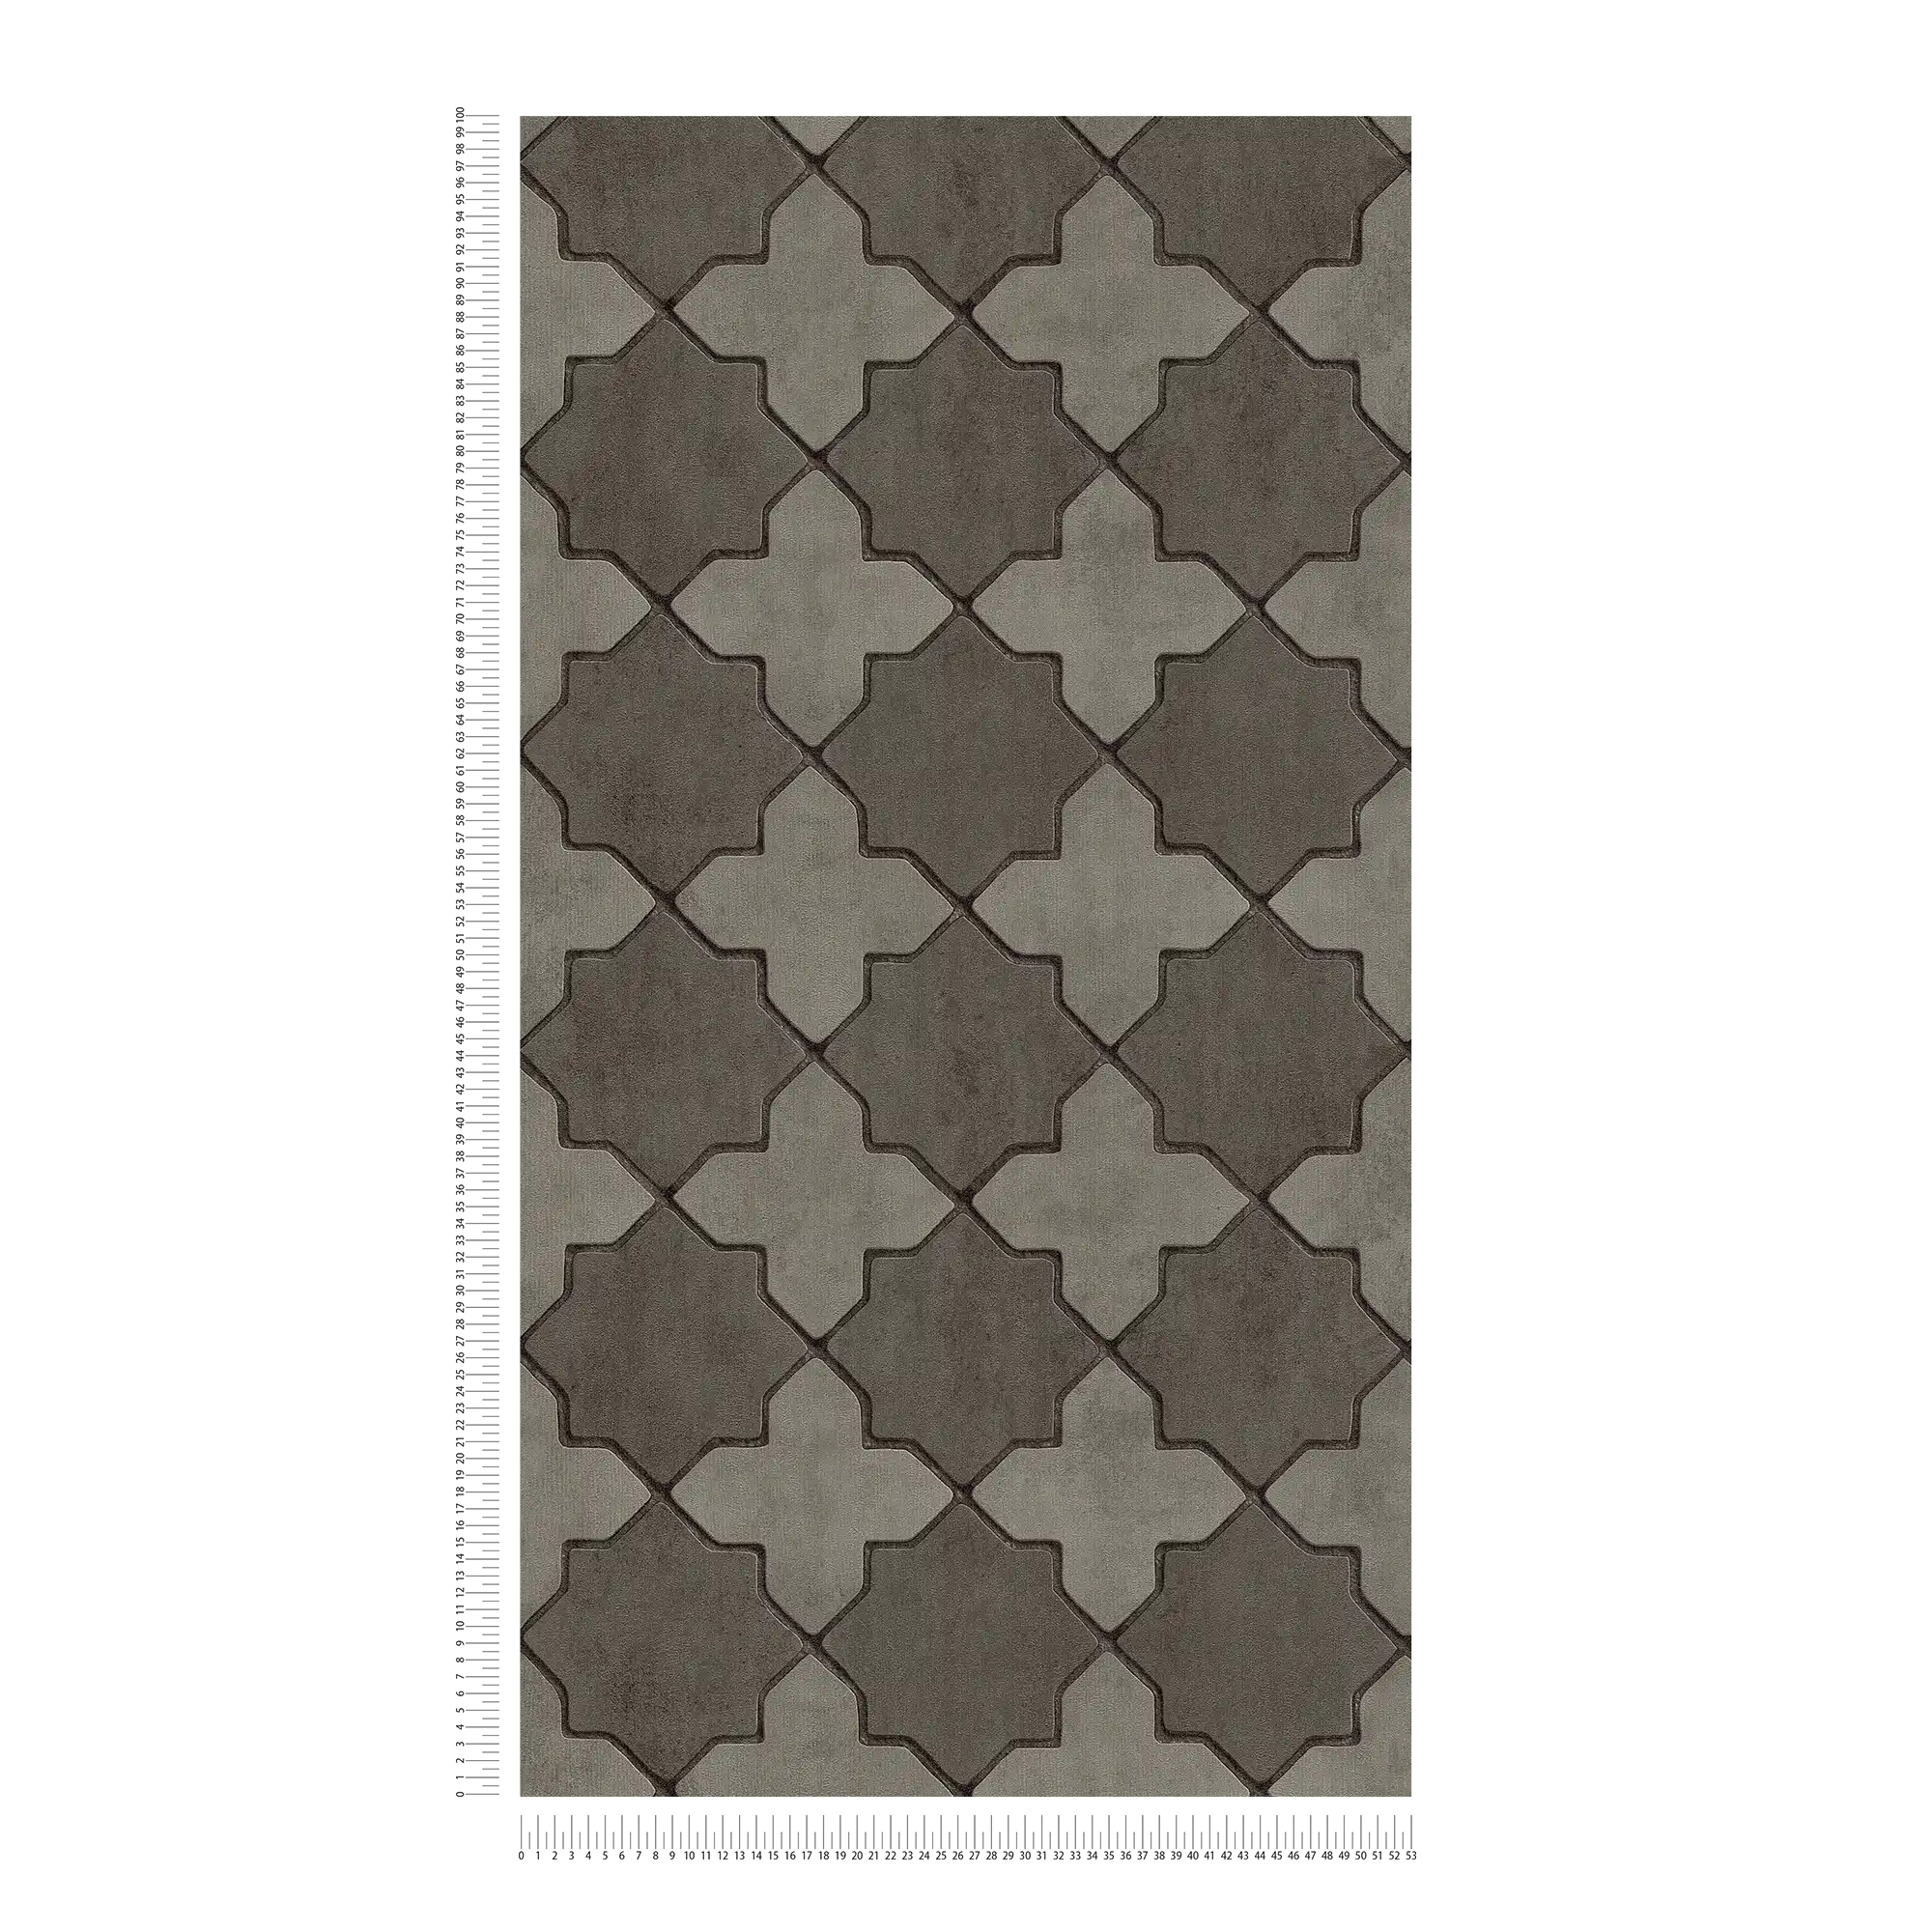             Fliesen-Tapete Mosaik-Optik – Grau, Schwarz
        